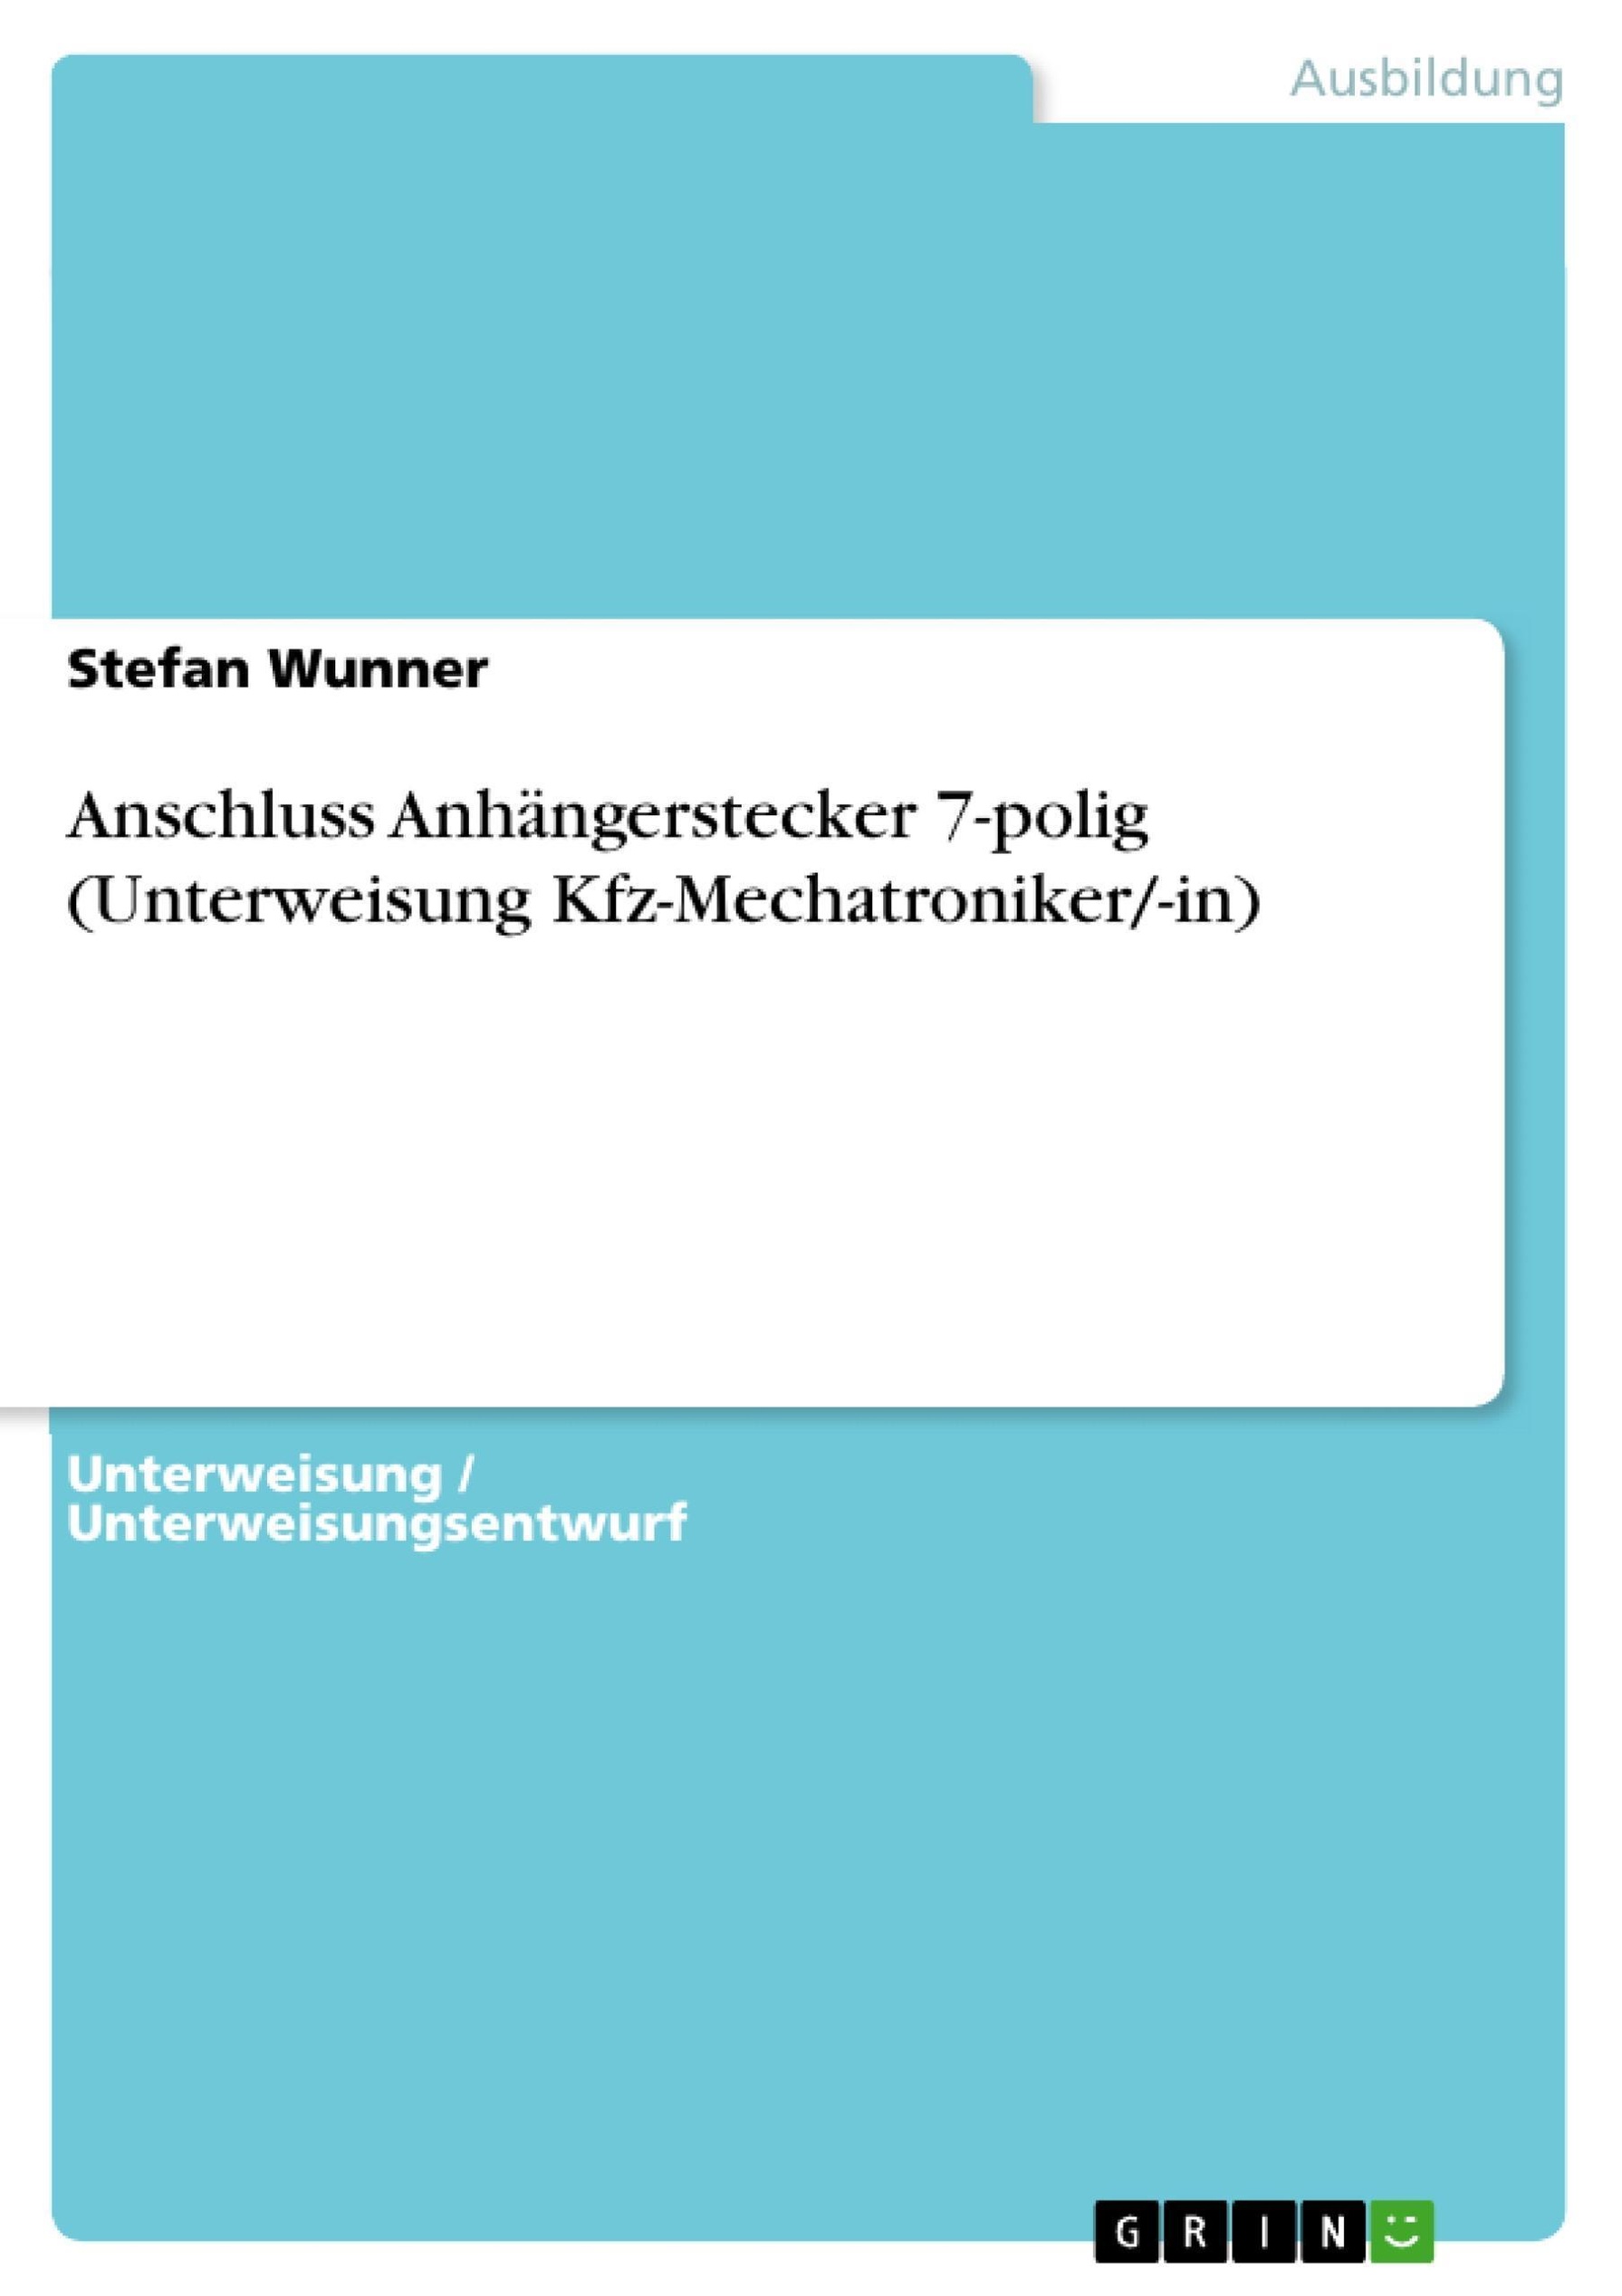 Anschluss Anhängerstecker 7-polig Unterweisung Kfz-Mechatroniker -in eBook  v. Stefan Wunner